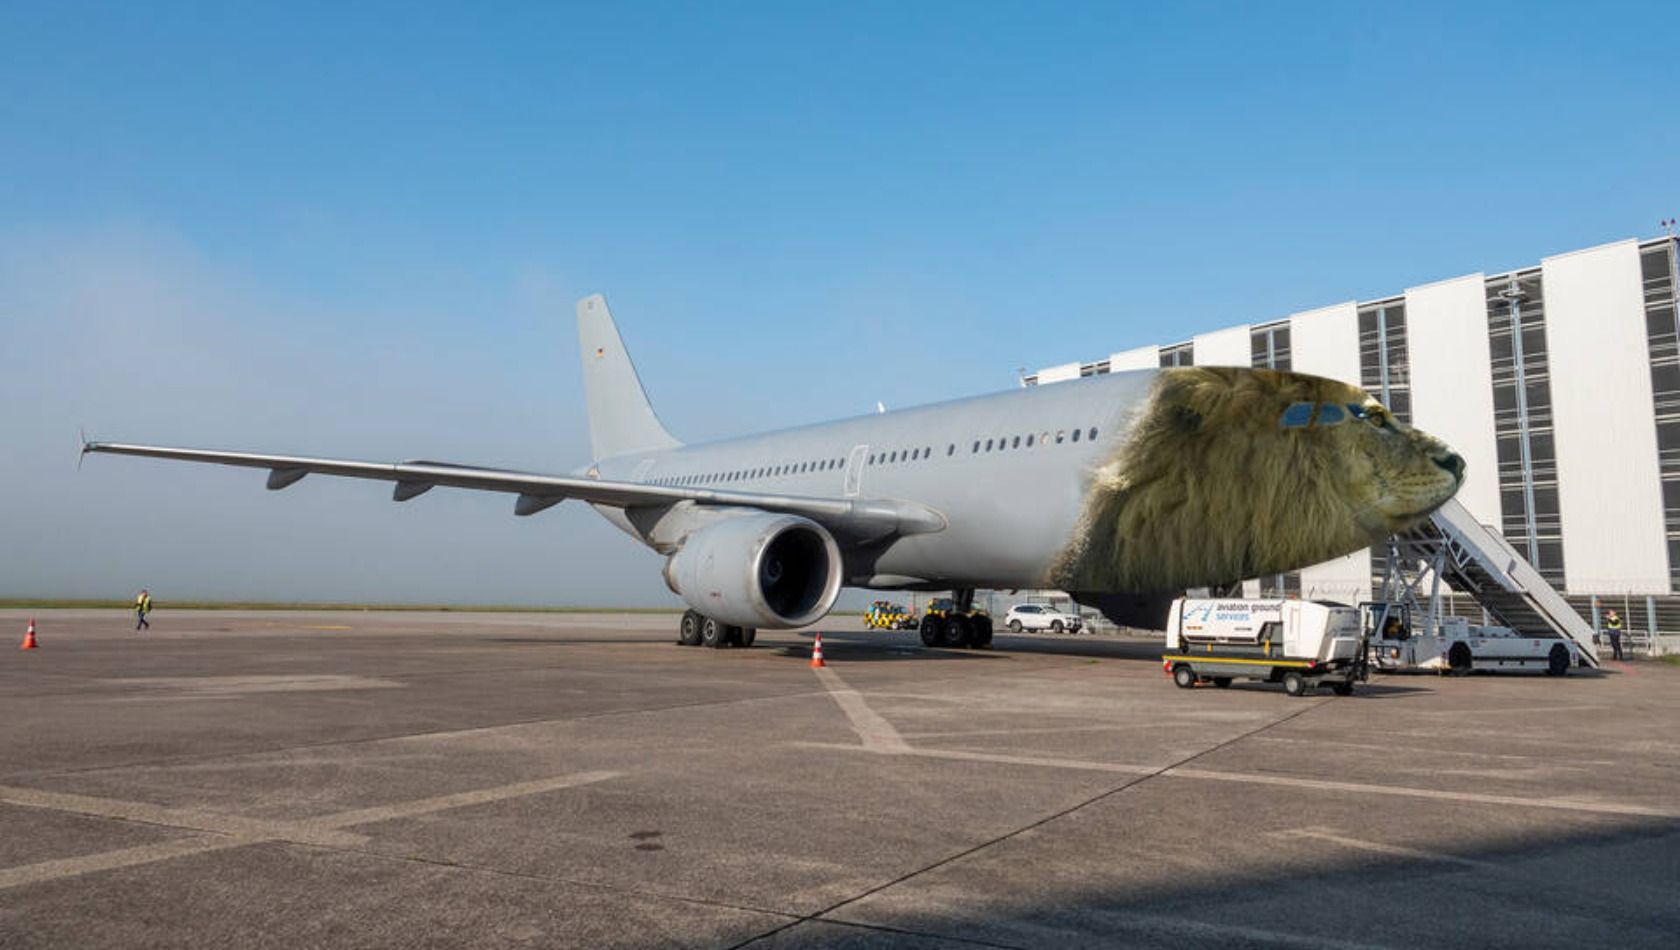 Der Airbus A310 mit umgestalteter Front, wie er im Serengeti-Park als Restaurant eröffnet werden soll